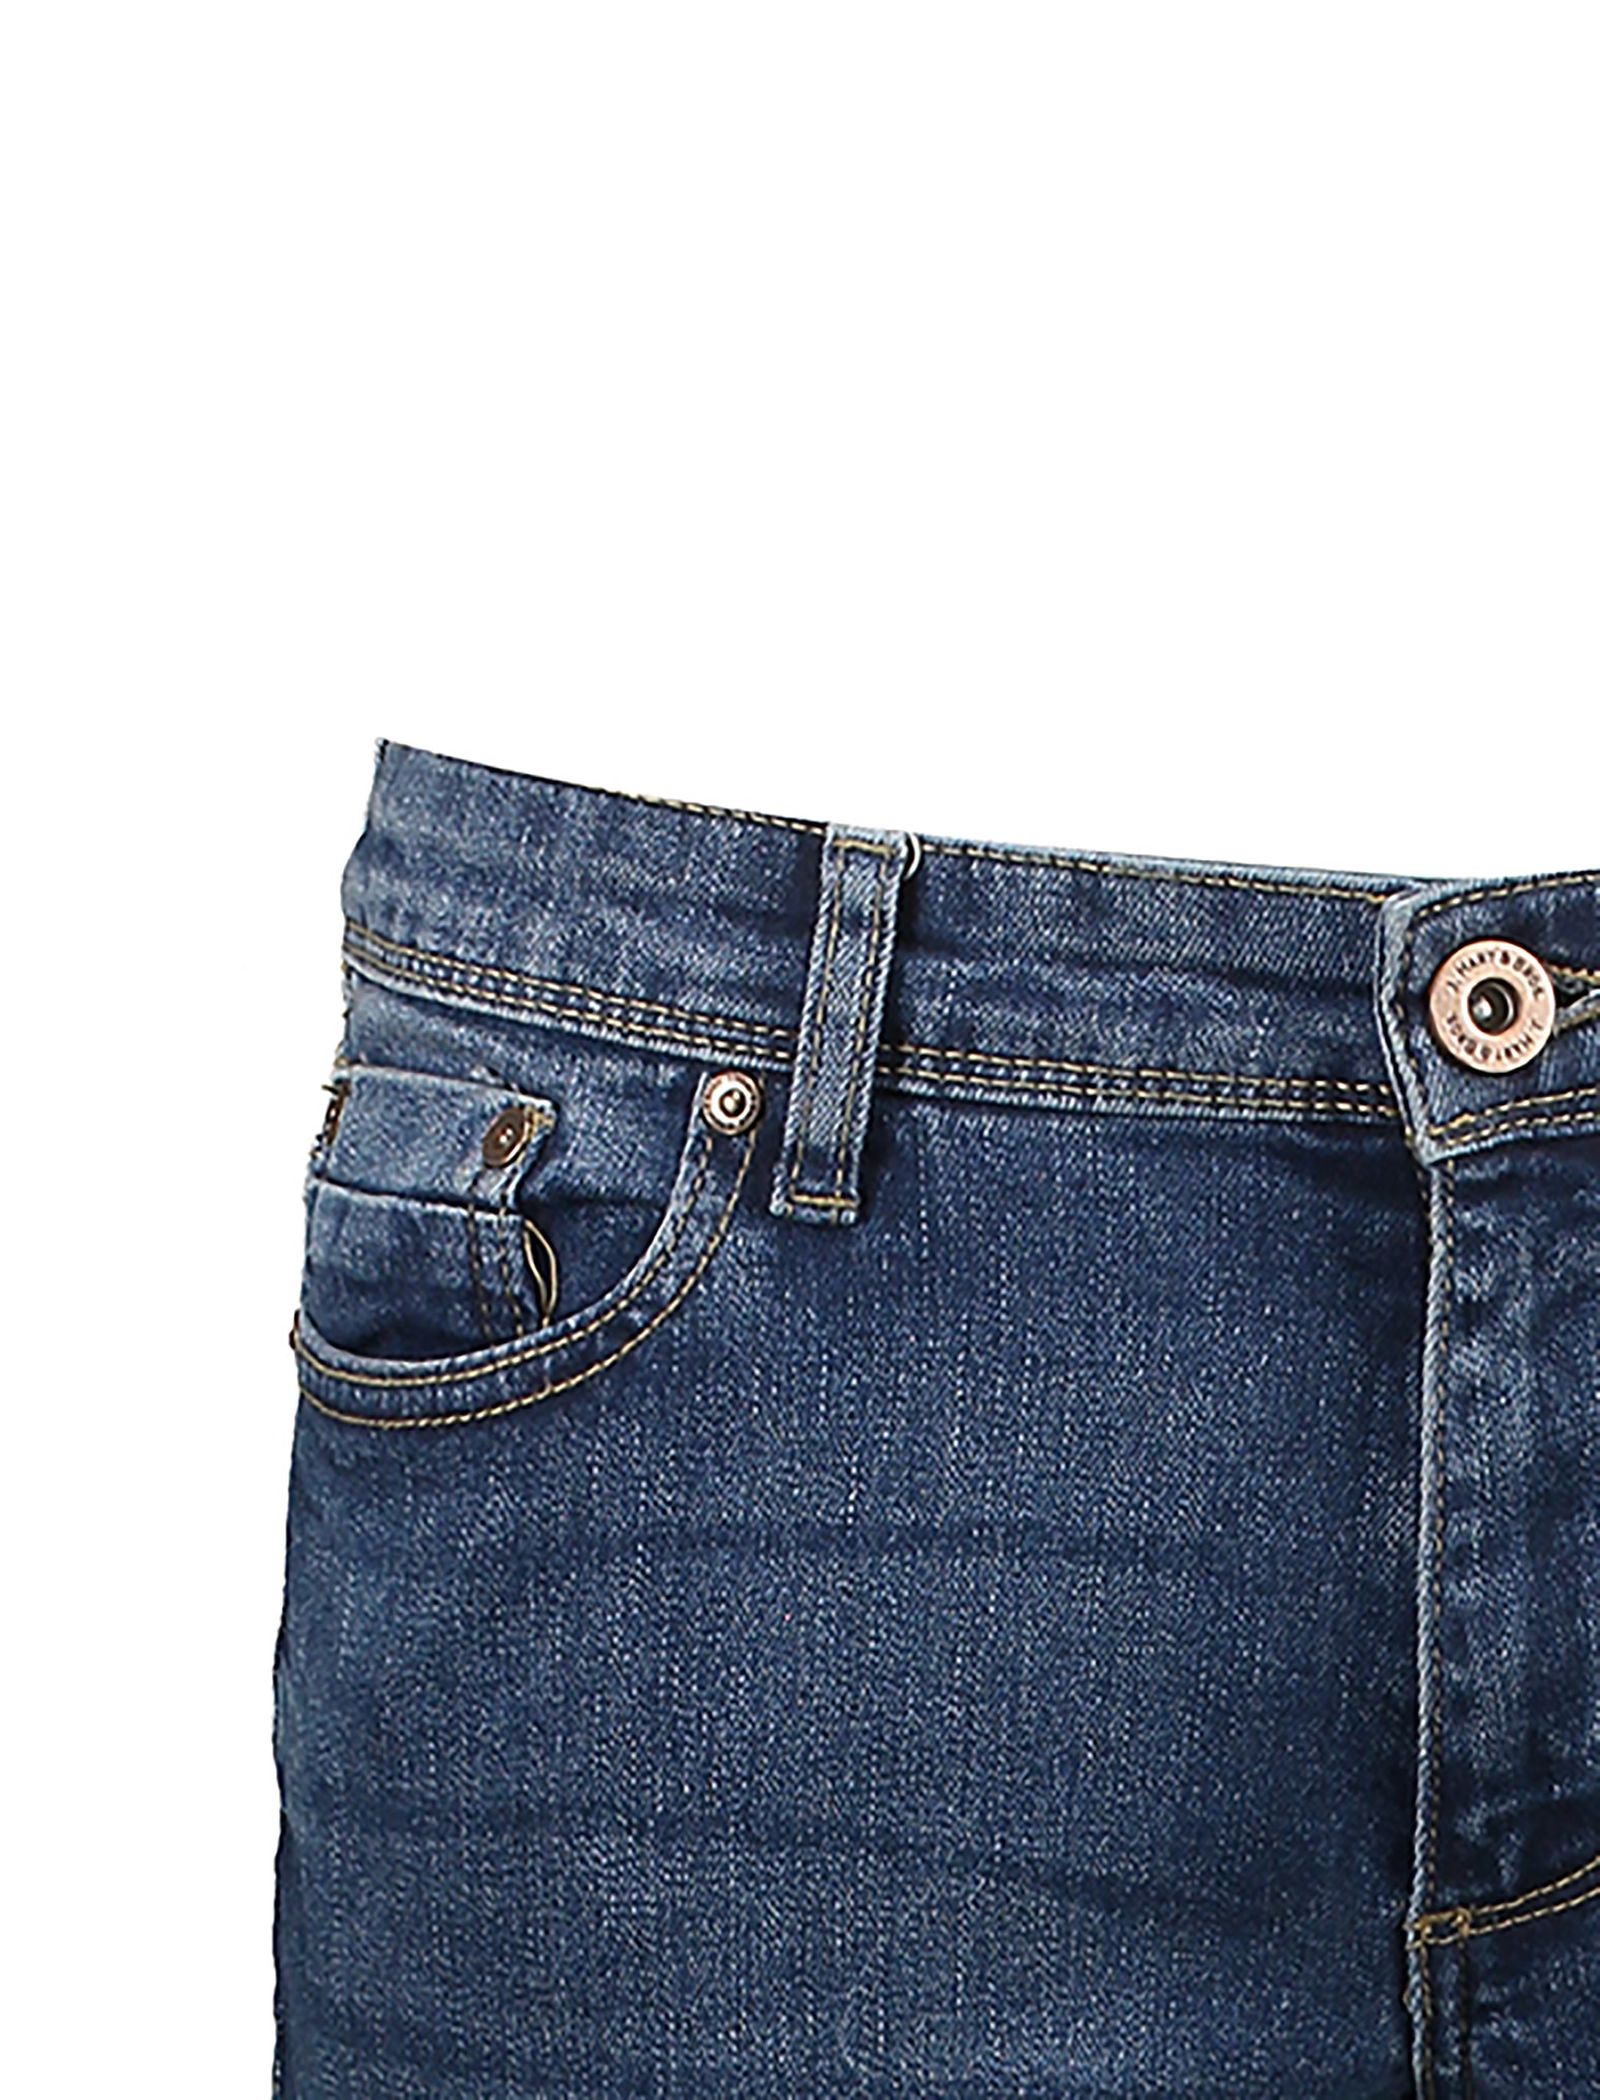 شلوار جین راسته مردانه - یوپیم - آبي - 5